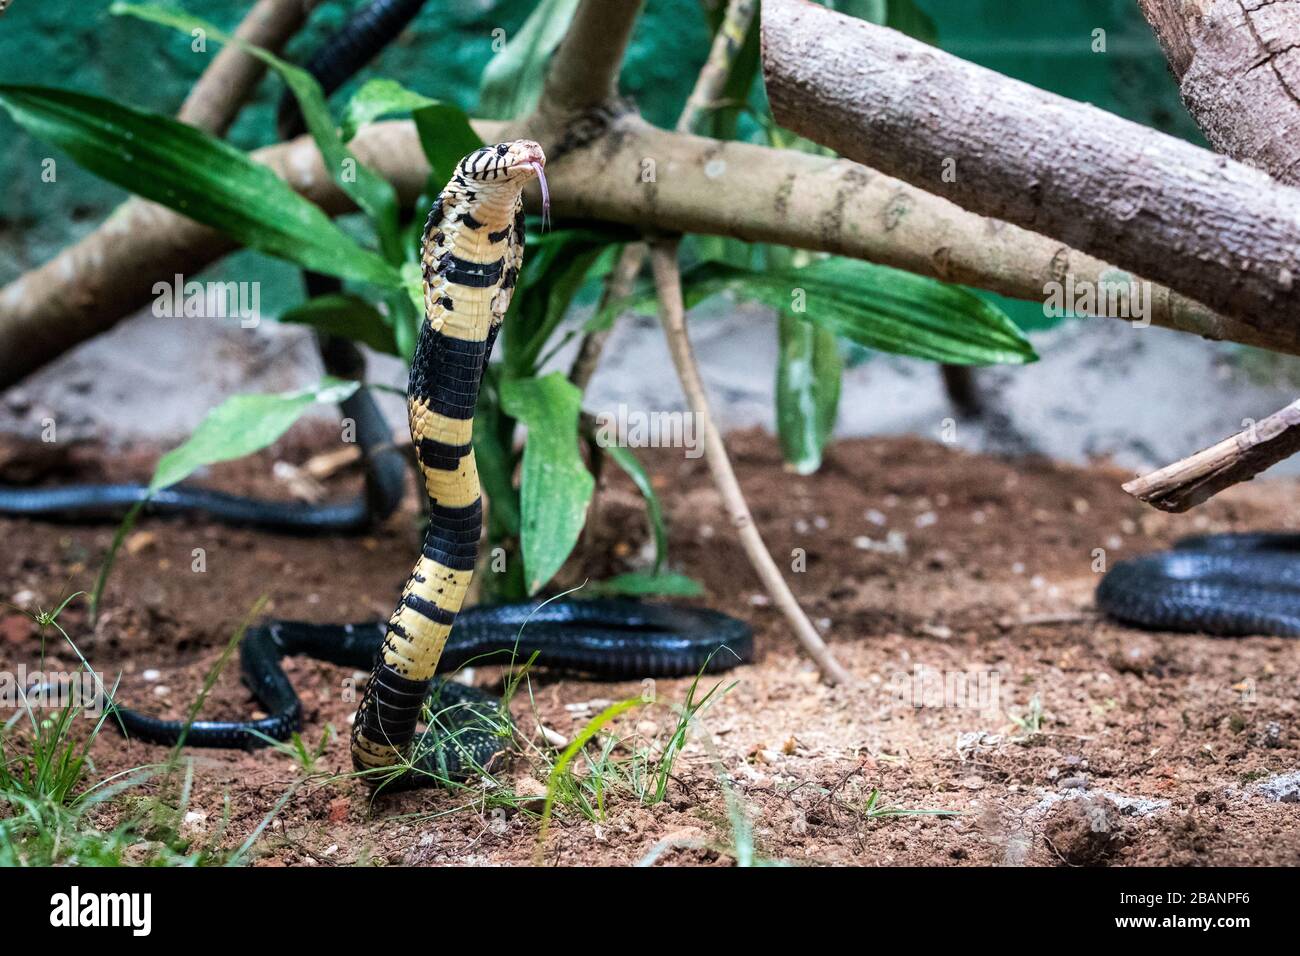 Forest cobra (Naja melanoleuca) at Uganda Reptiles Village, Entebbe, Uganda Stock Photo